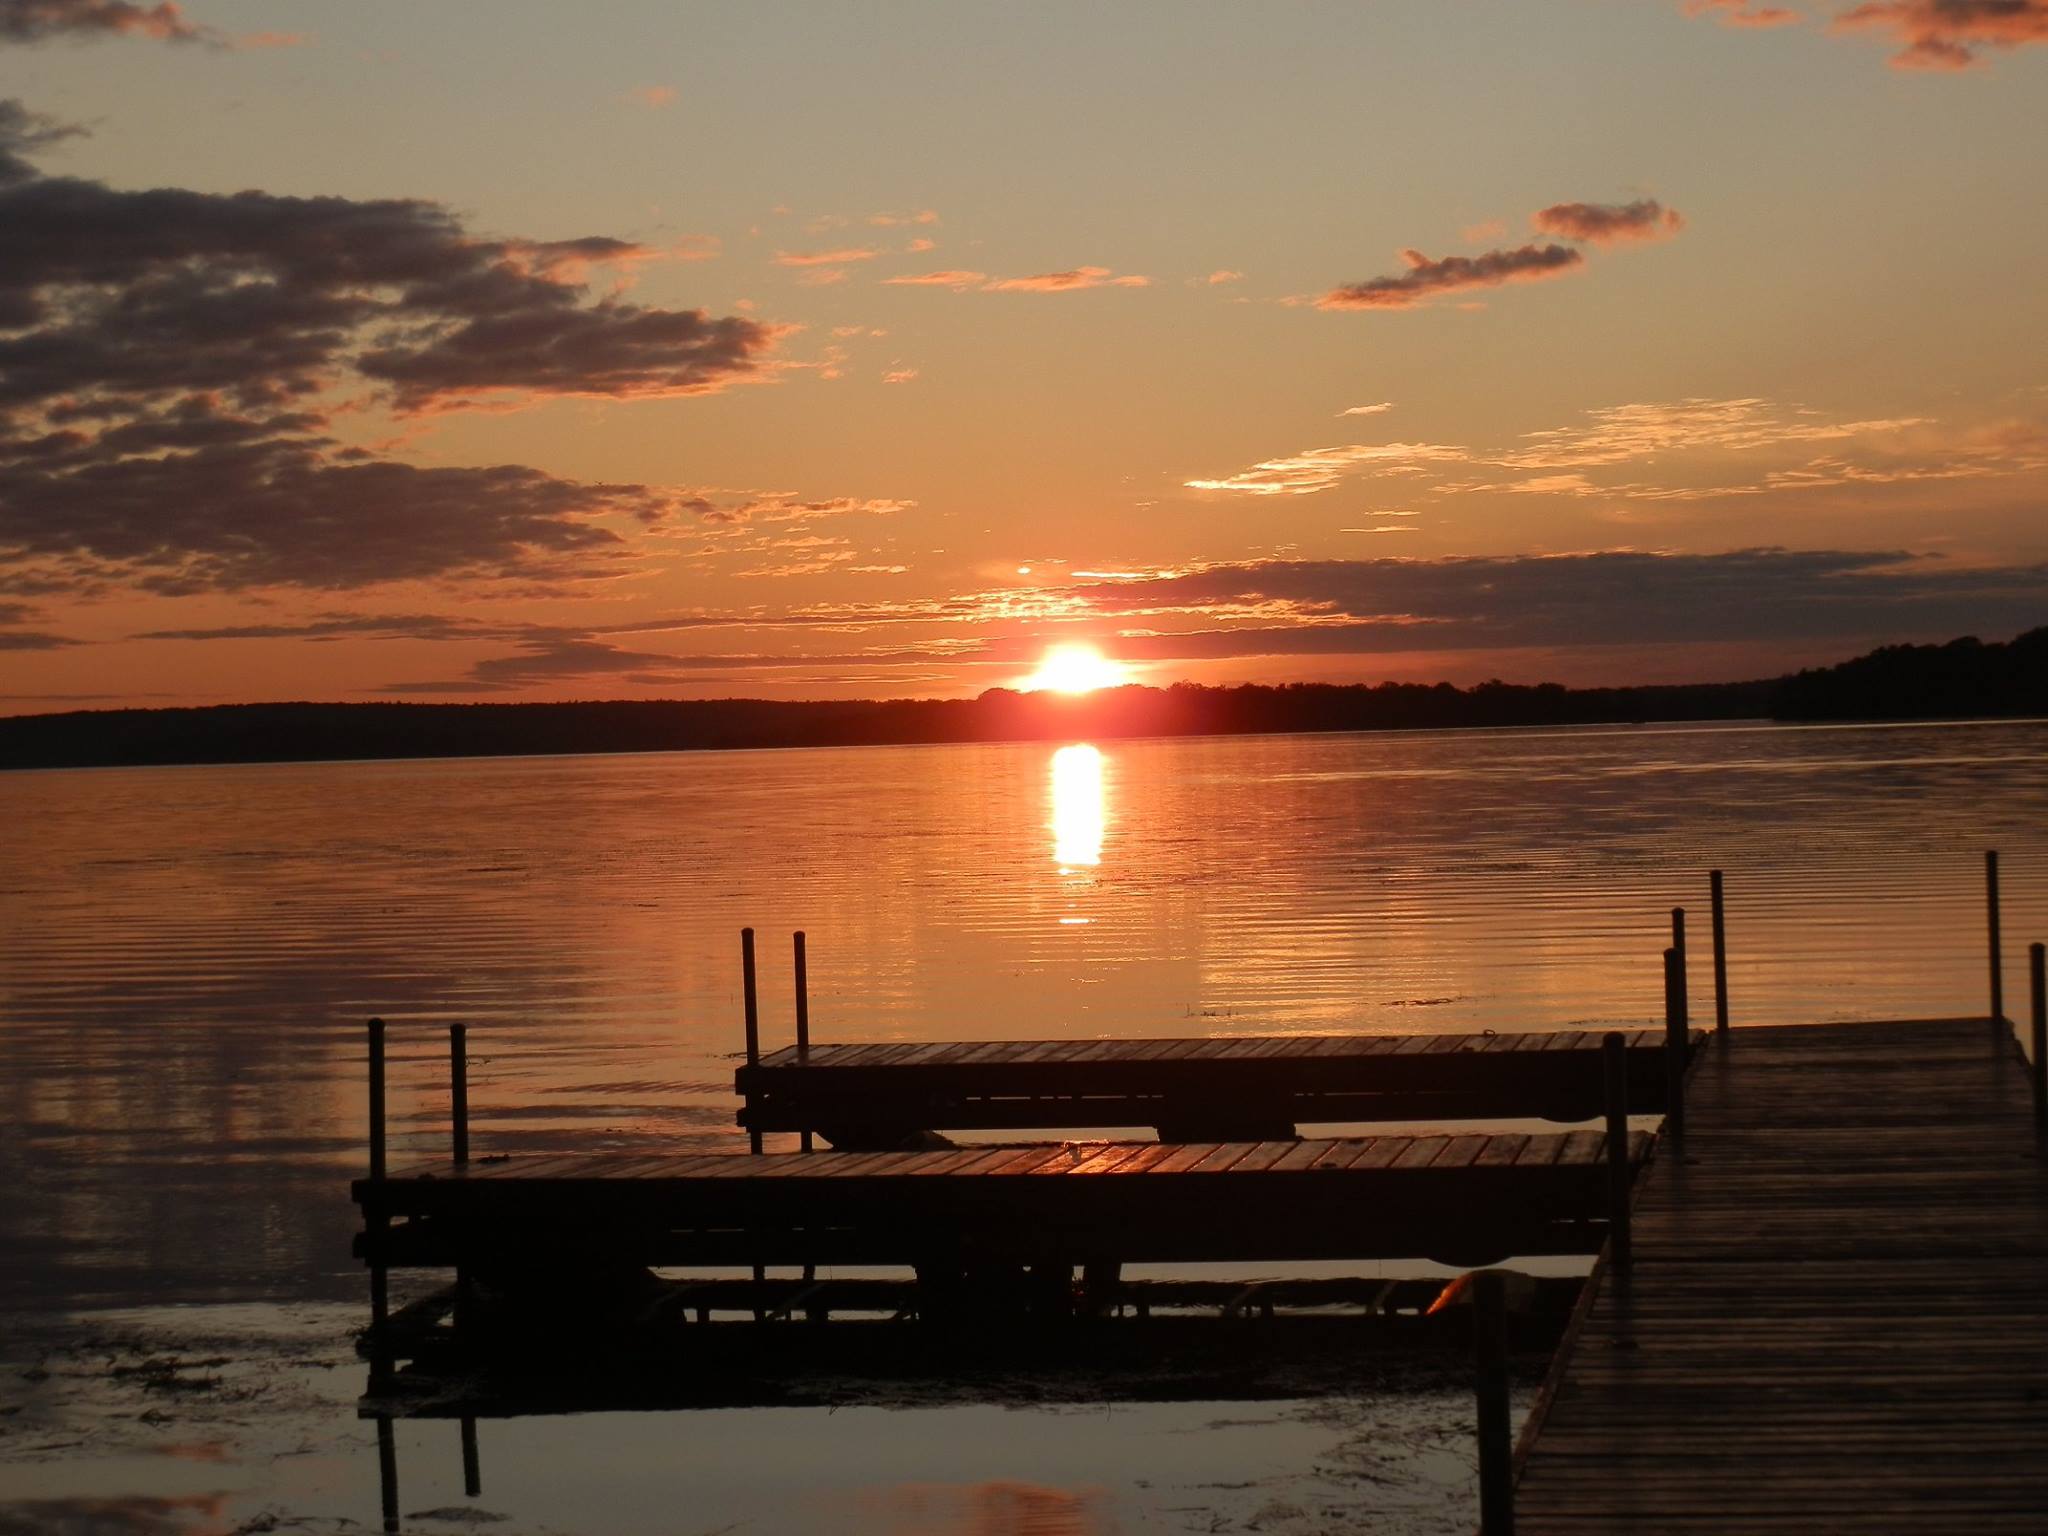 Sunset View at Lake